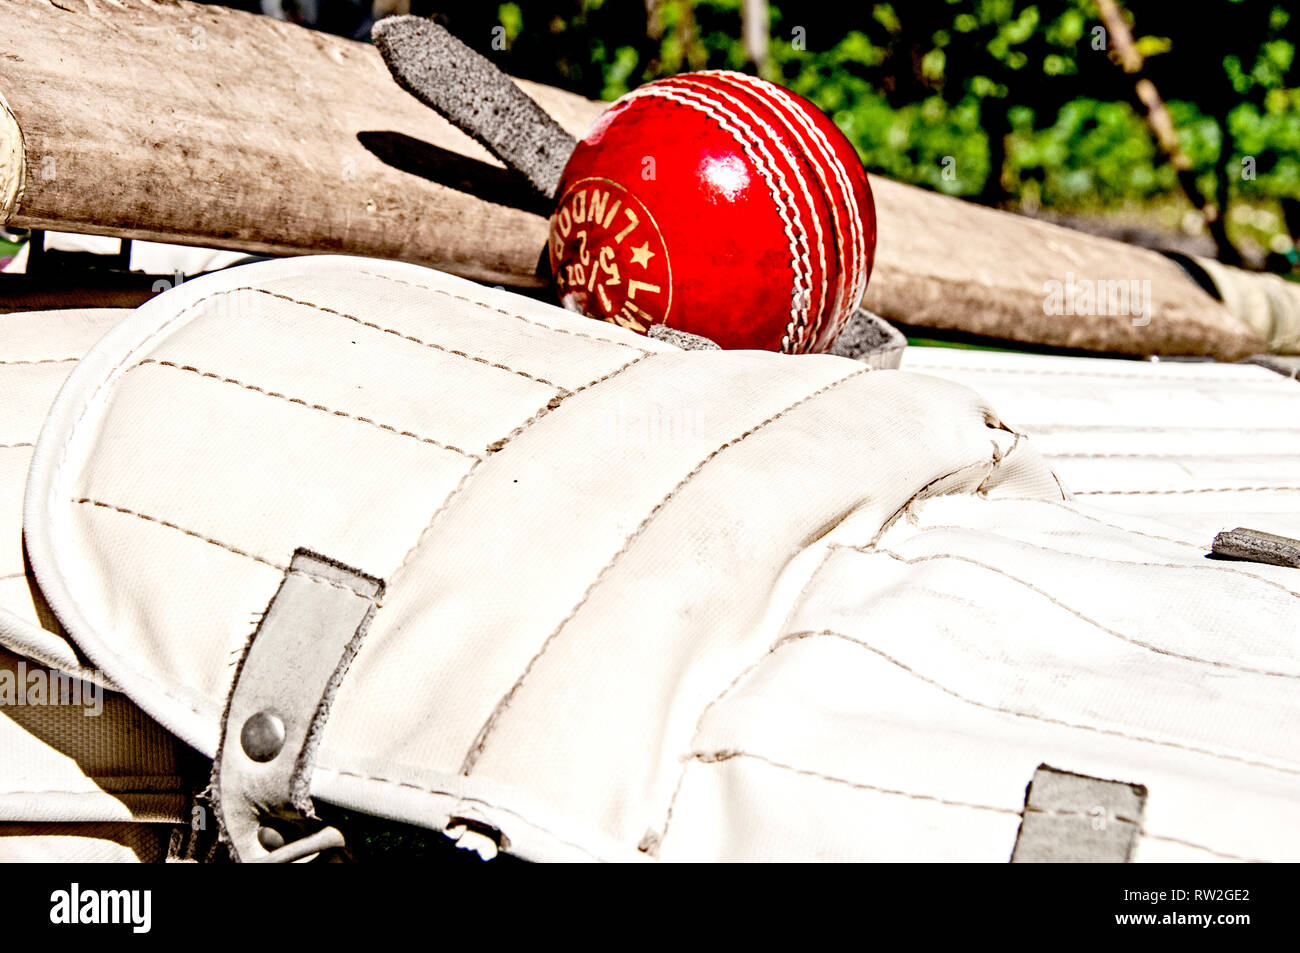 Equipment for Cricket; Cricketausrüstung Stock Photo